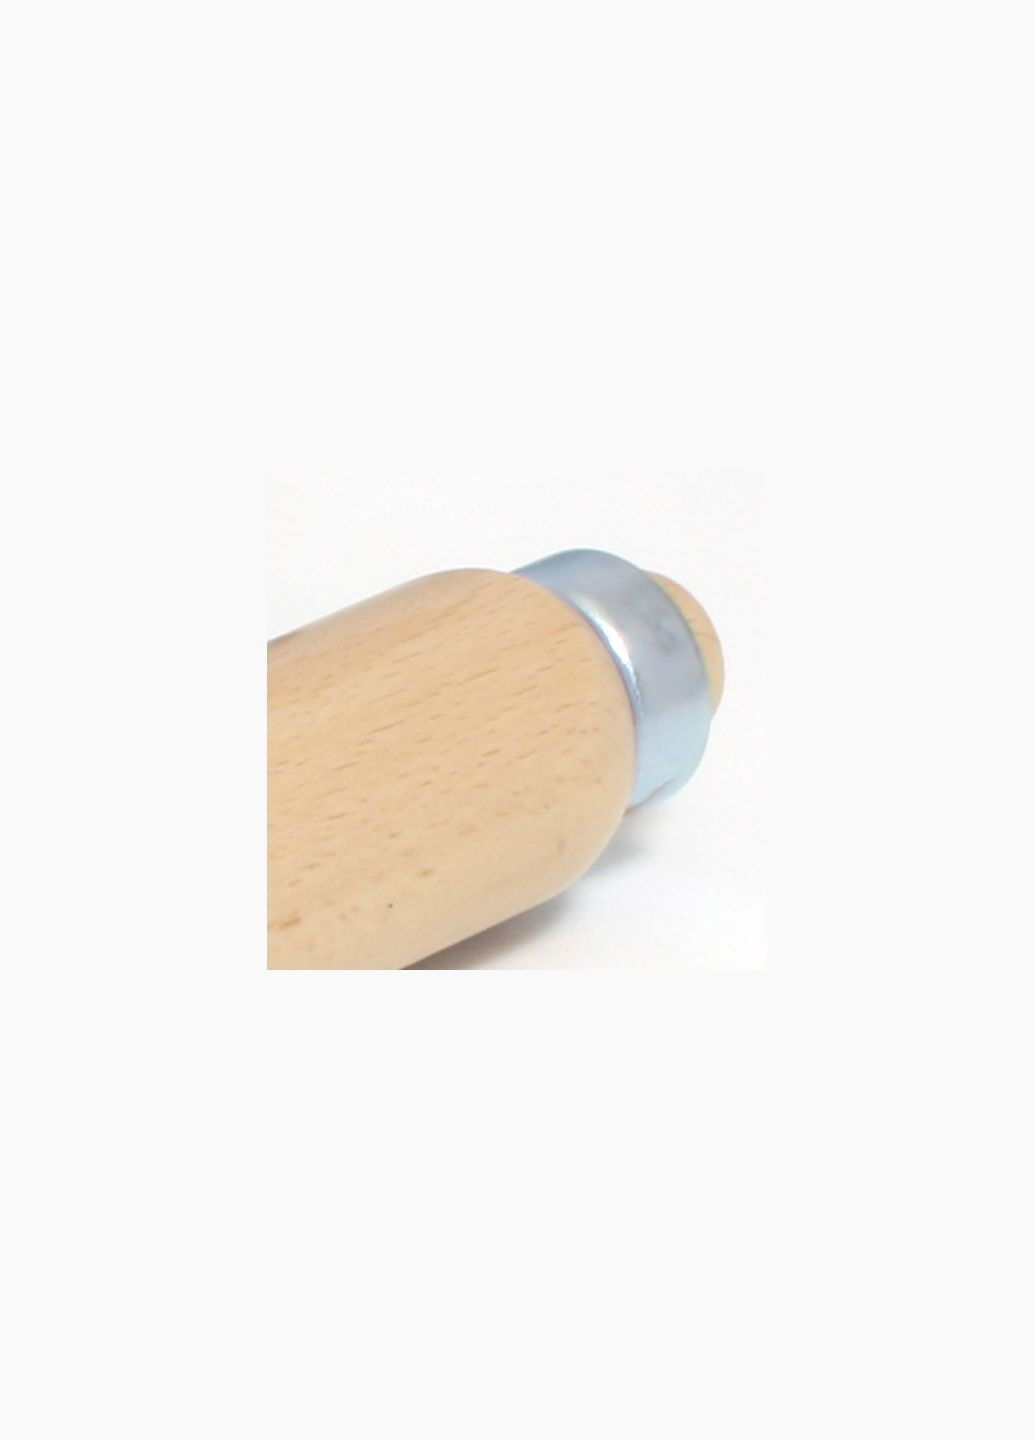 Стамеска 18 мм дерев'яна ручка хроммарганець (16170) Narex Bystrice (286423370)